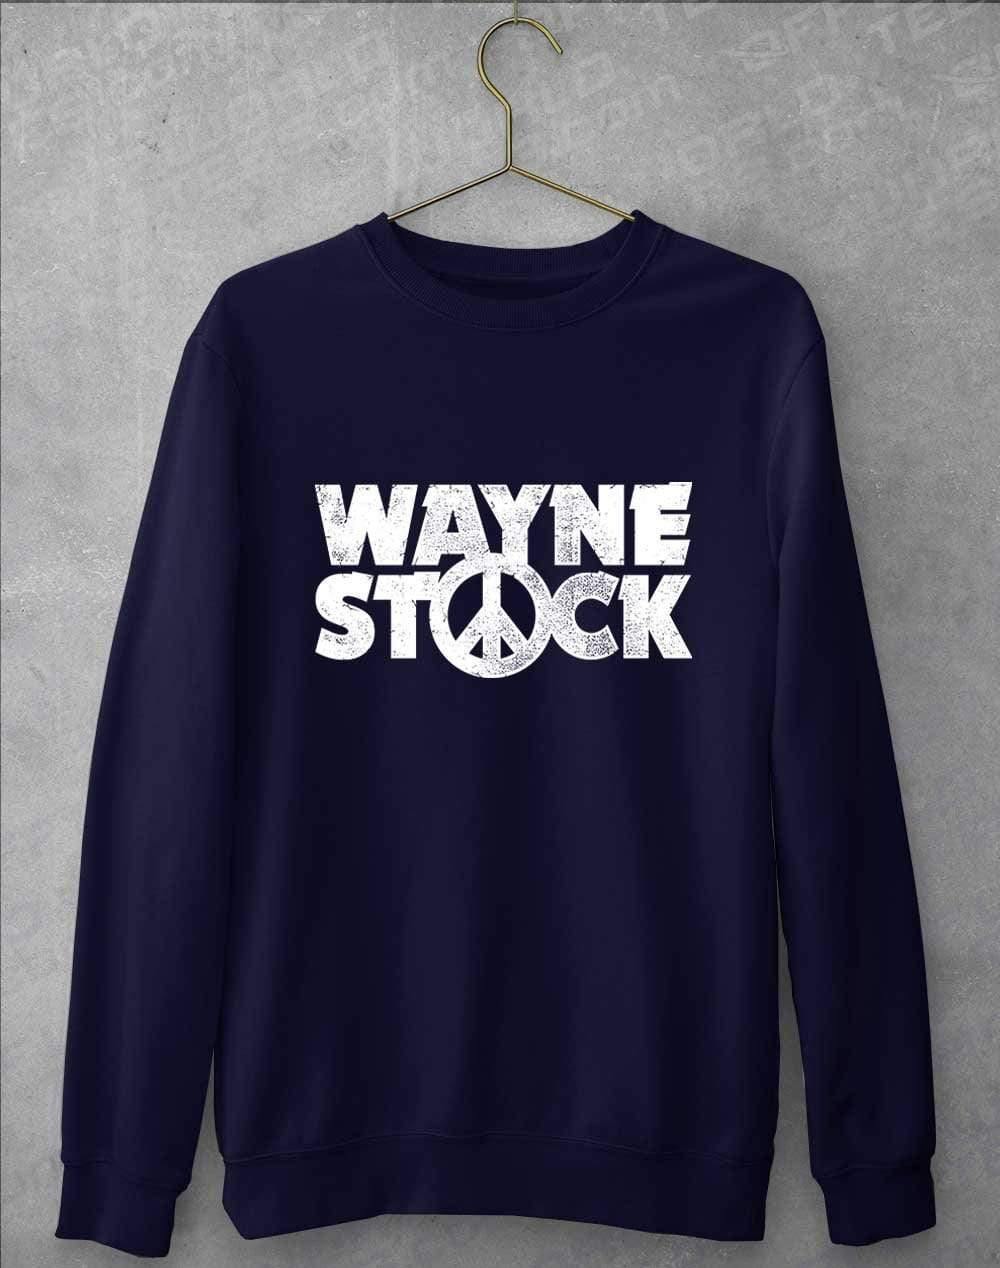 Waynestock Sweatshirt S / Oxford Navy  - Off World Tees